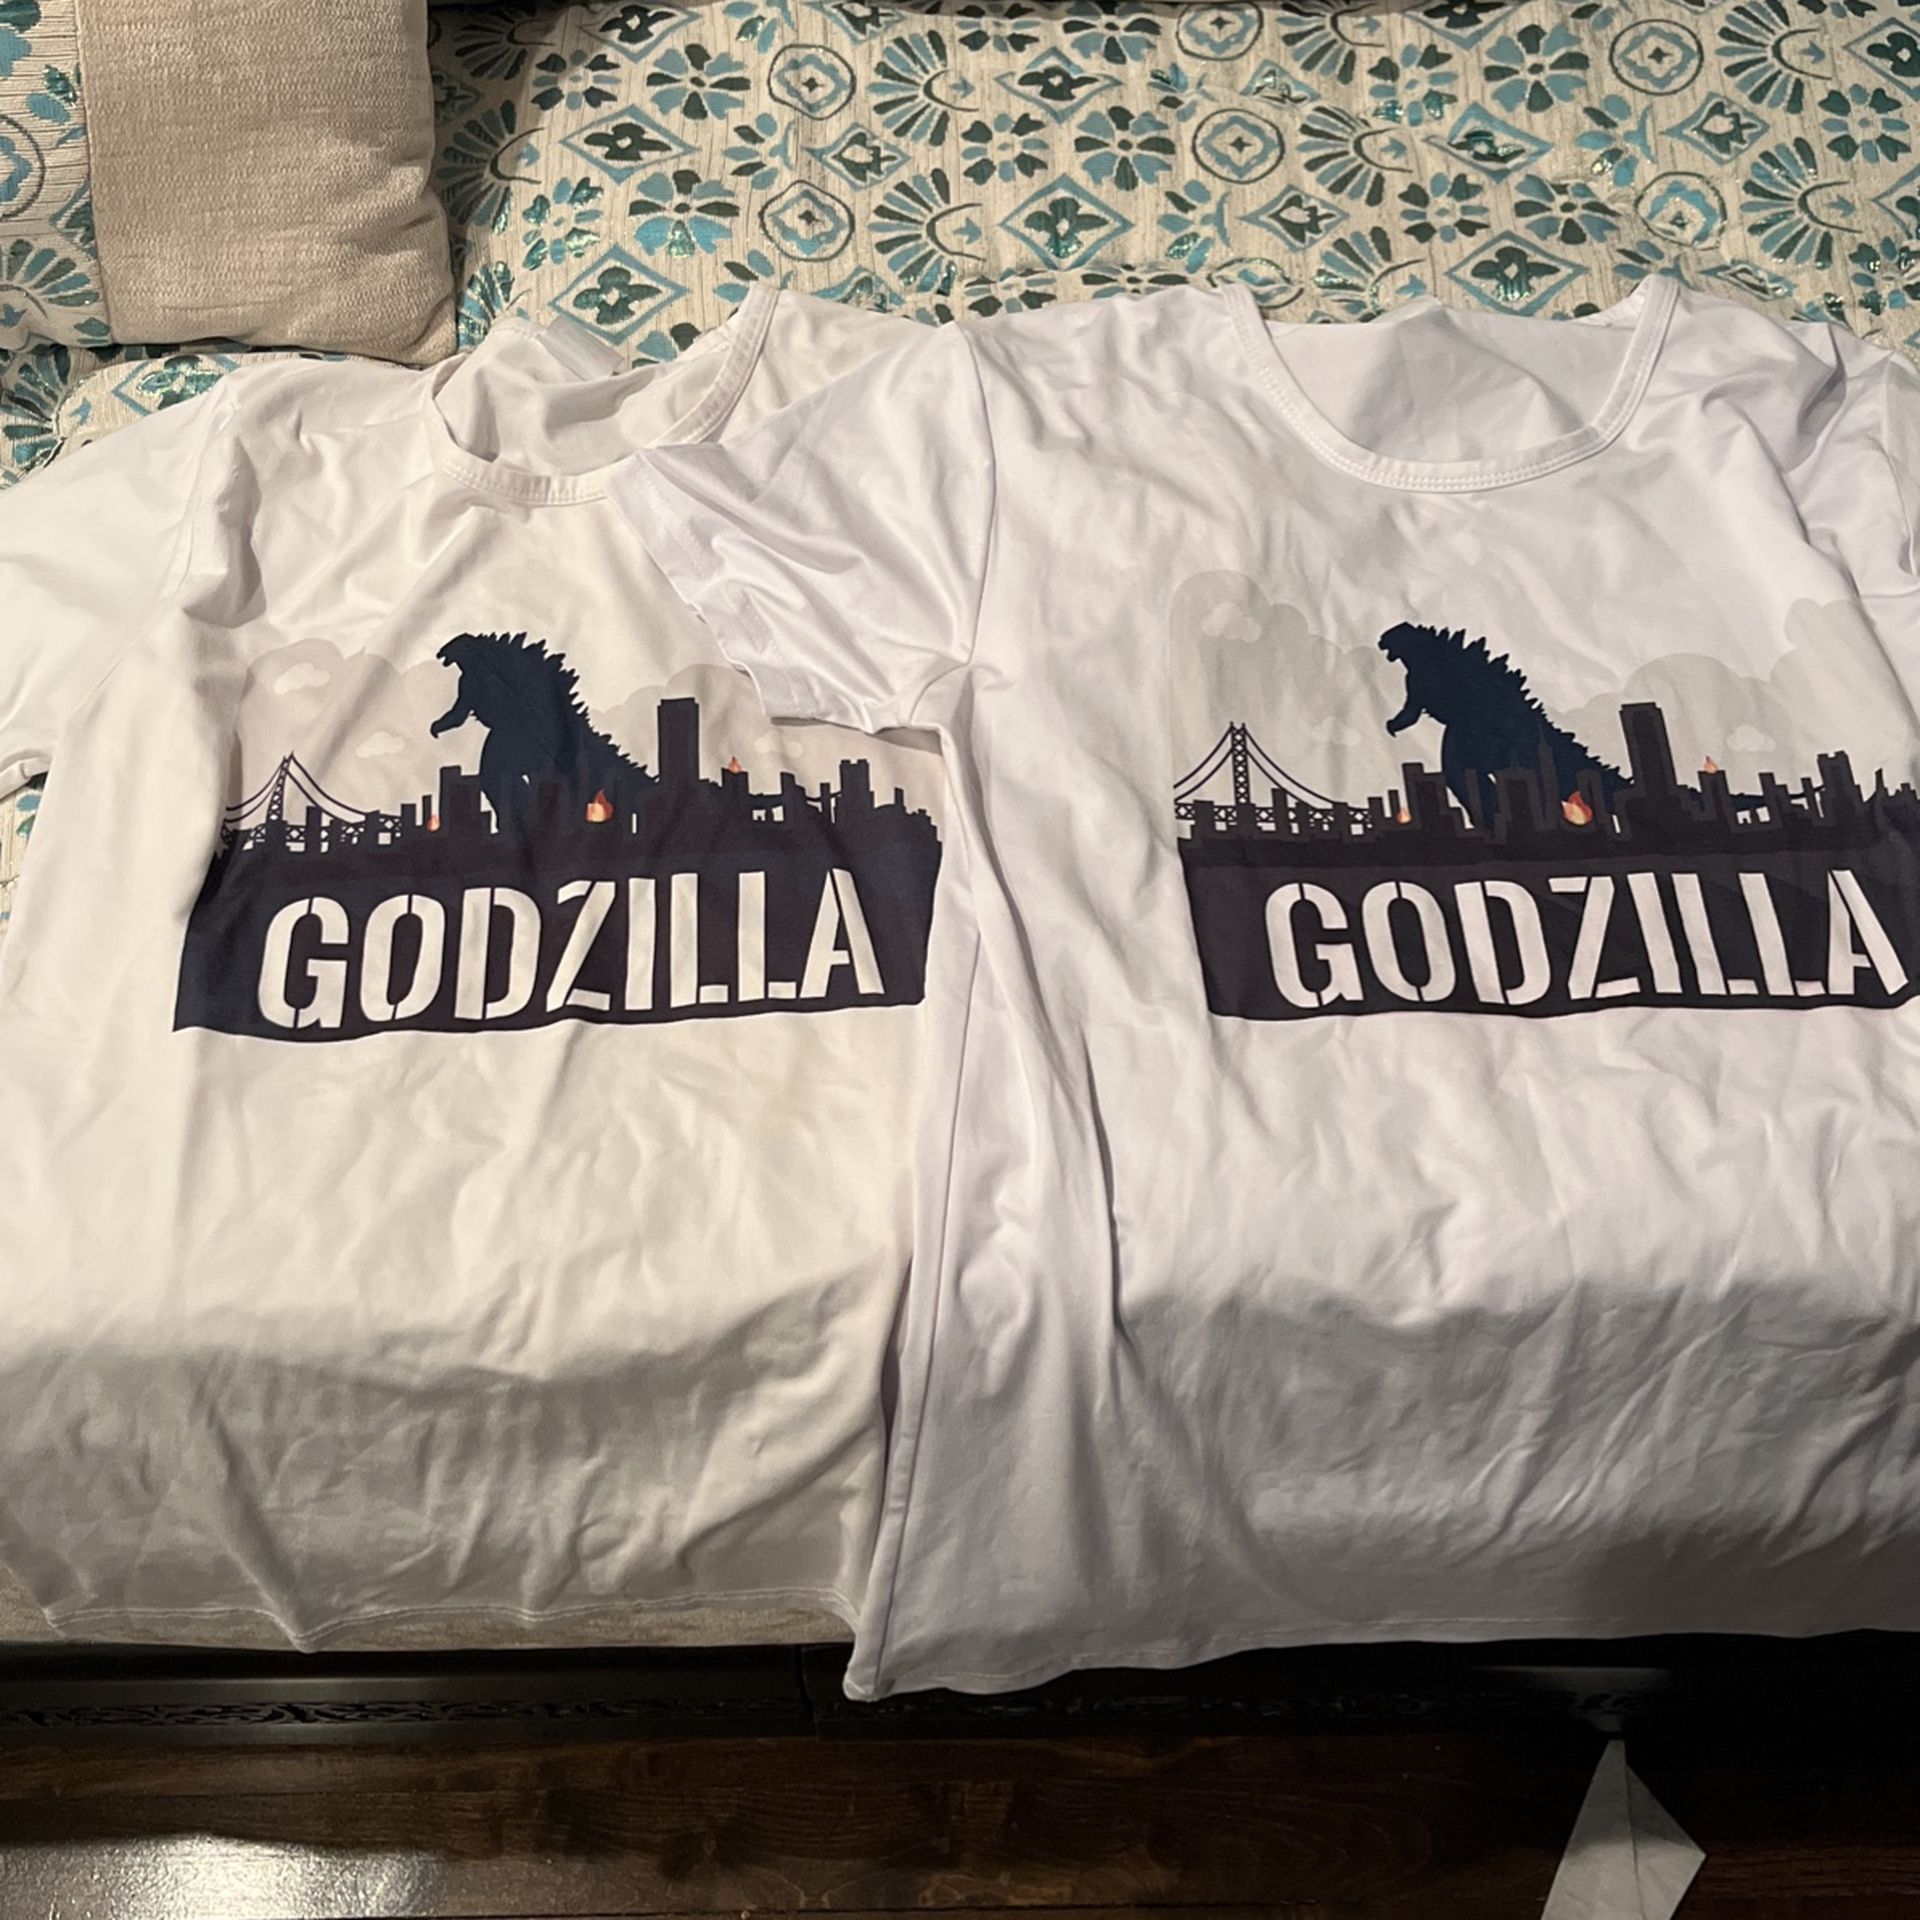 Godzilla T-shirts  $1